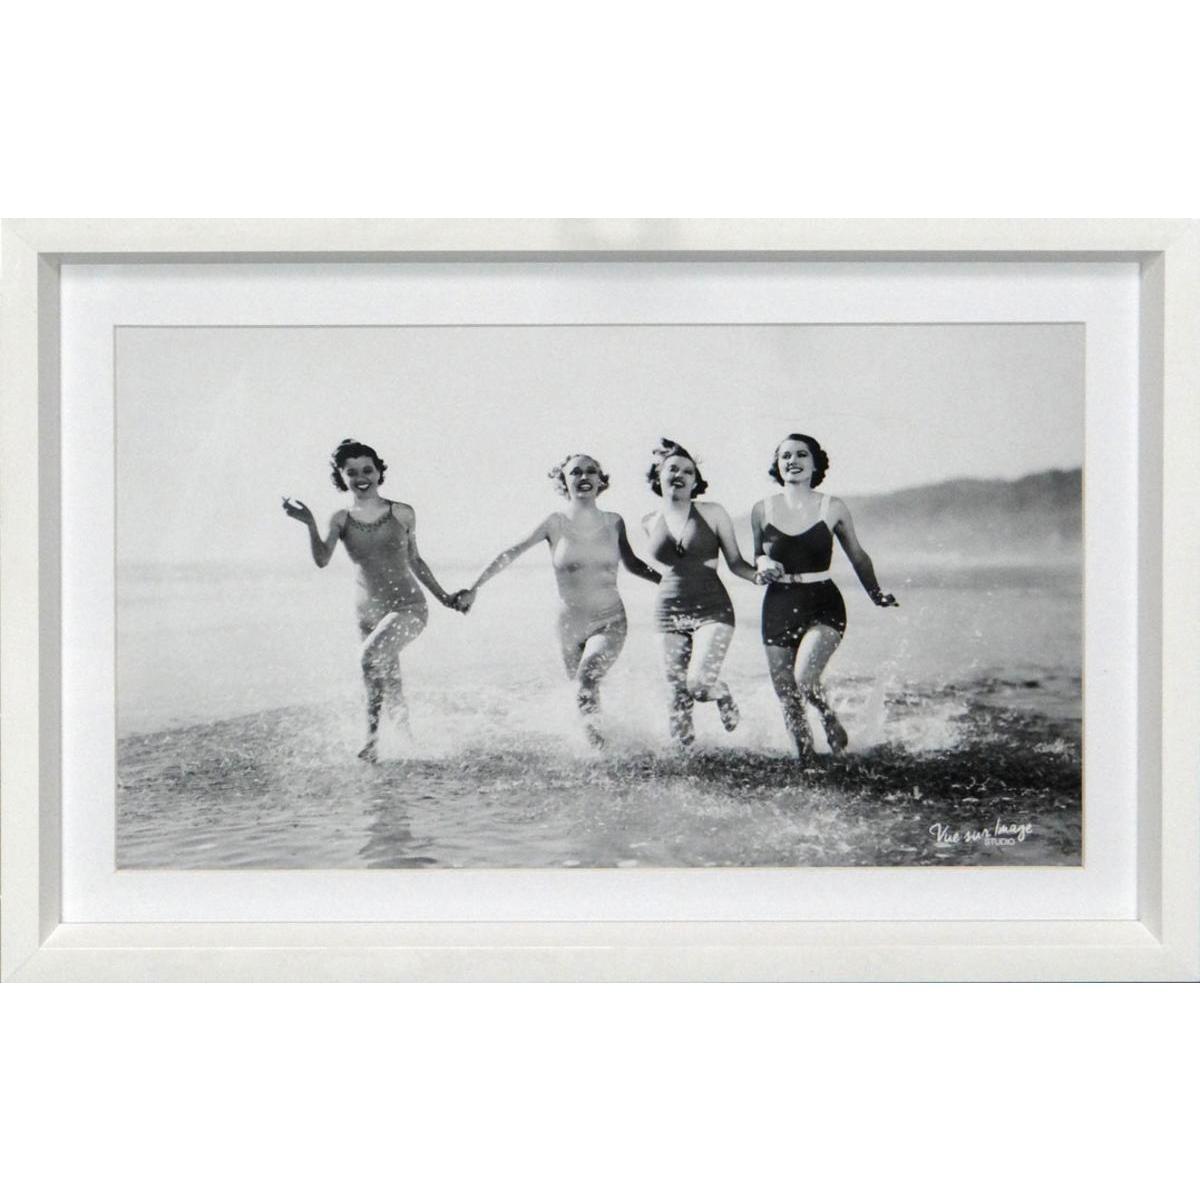 Cadre photo décoratif - Plastique - 30 x 20 cm - Noir et blanc